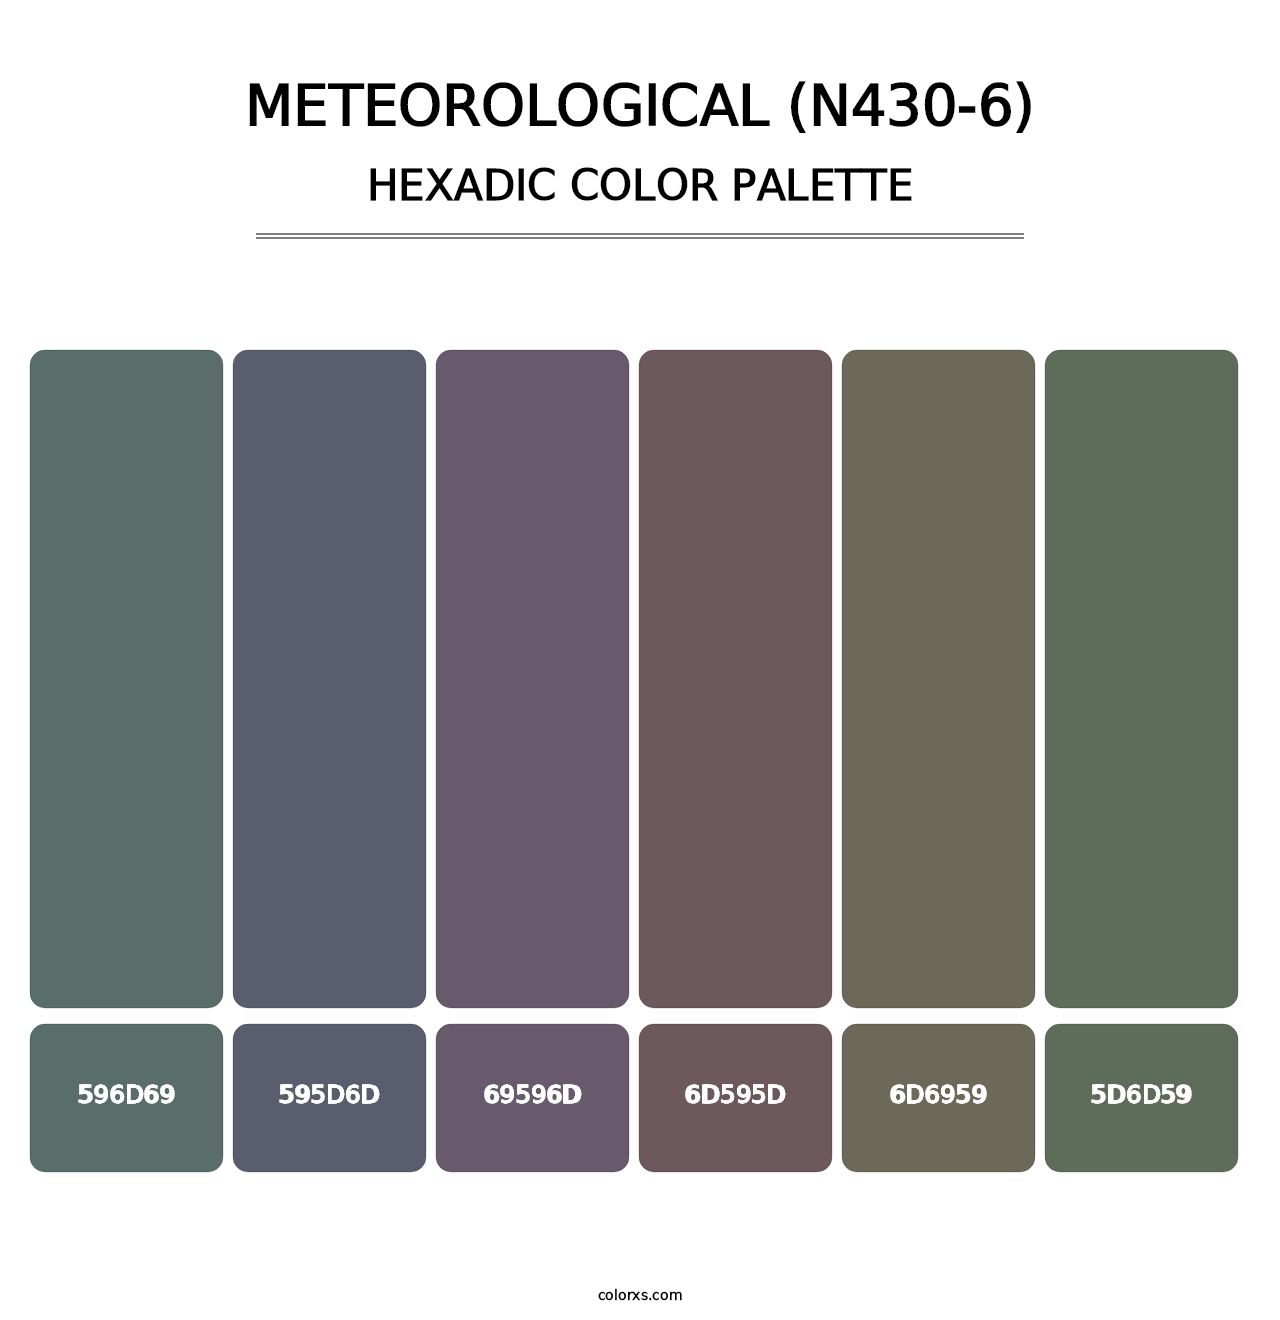 Meteorological (N430-6) - Hexadic Color Palette